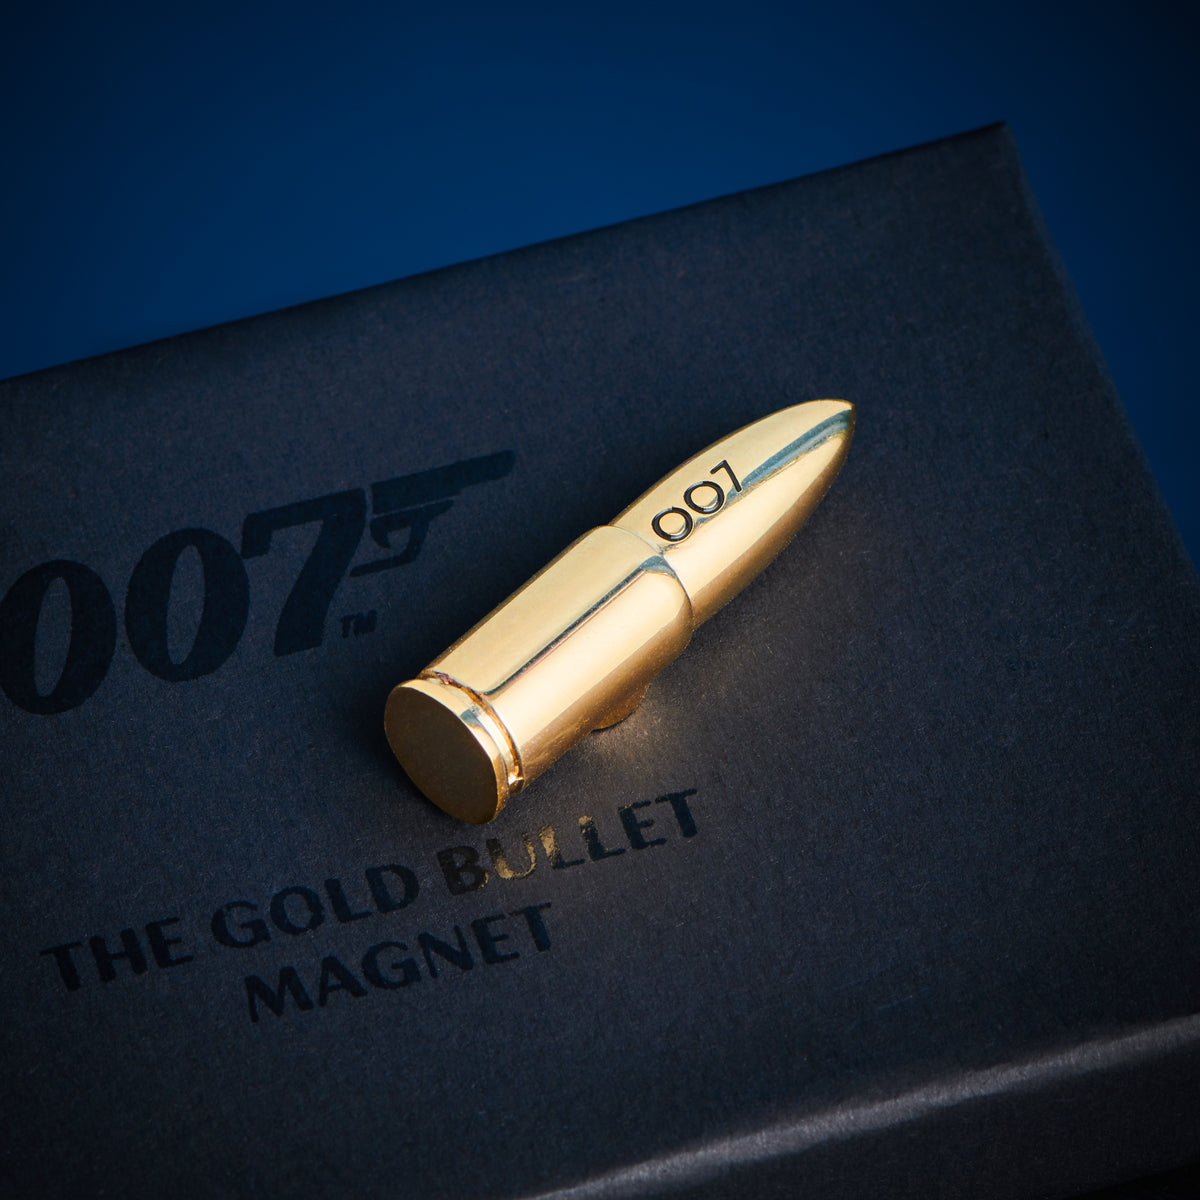 James Bond Gold Bullet Magnet